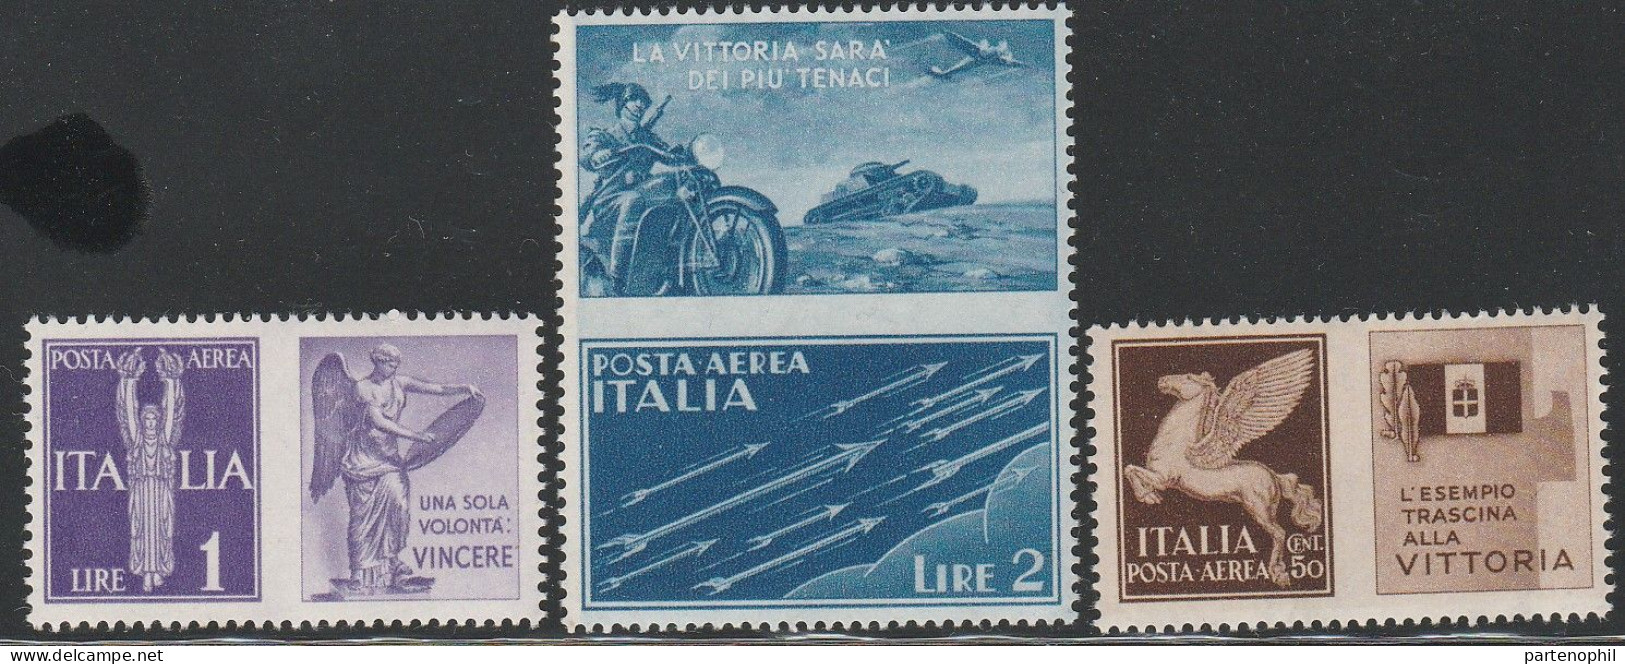 155 Italia Regno - Propaganda Di Guerra - 1942 - Francobolli Di Posta Aerea Con Appendici Di Propaganda Bellica N. 12A/A - War Propaganda